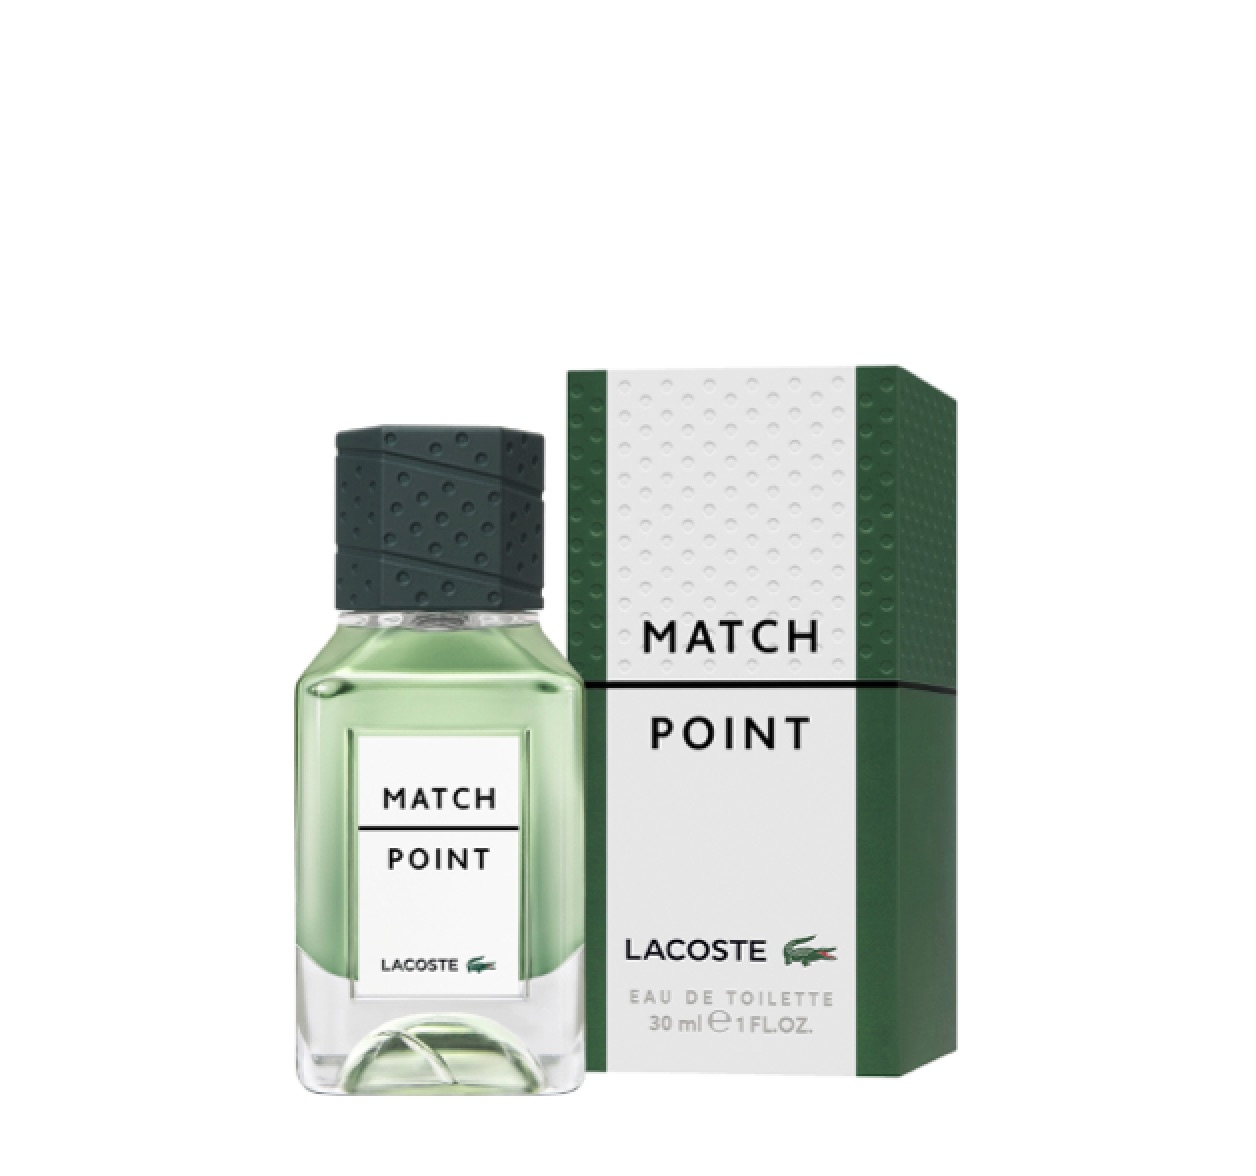 Lacoste Match Point Eau de Toilette 30ml – Perfume Essence